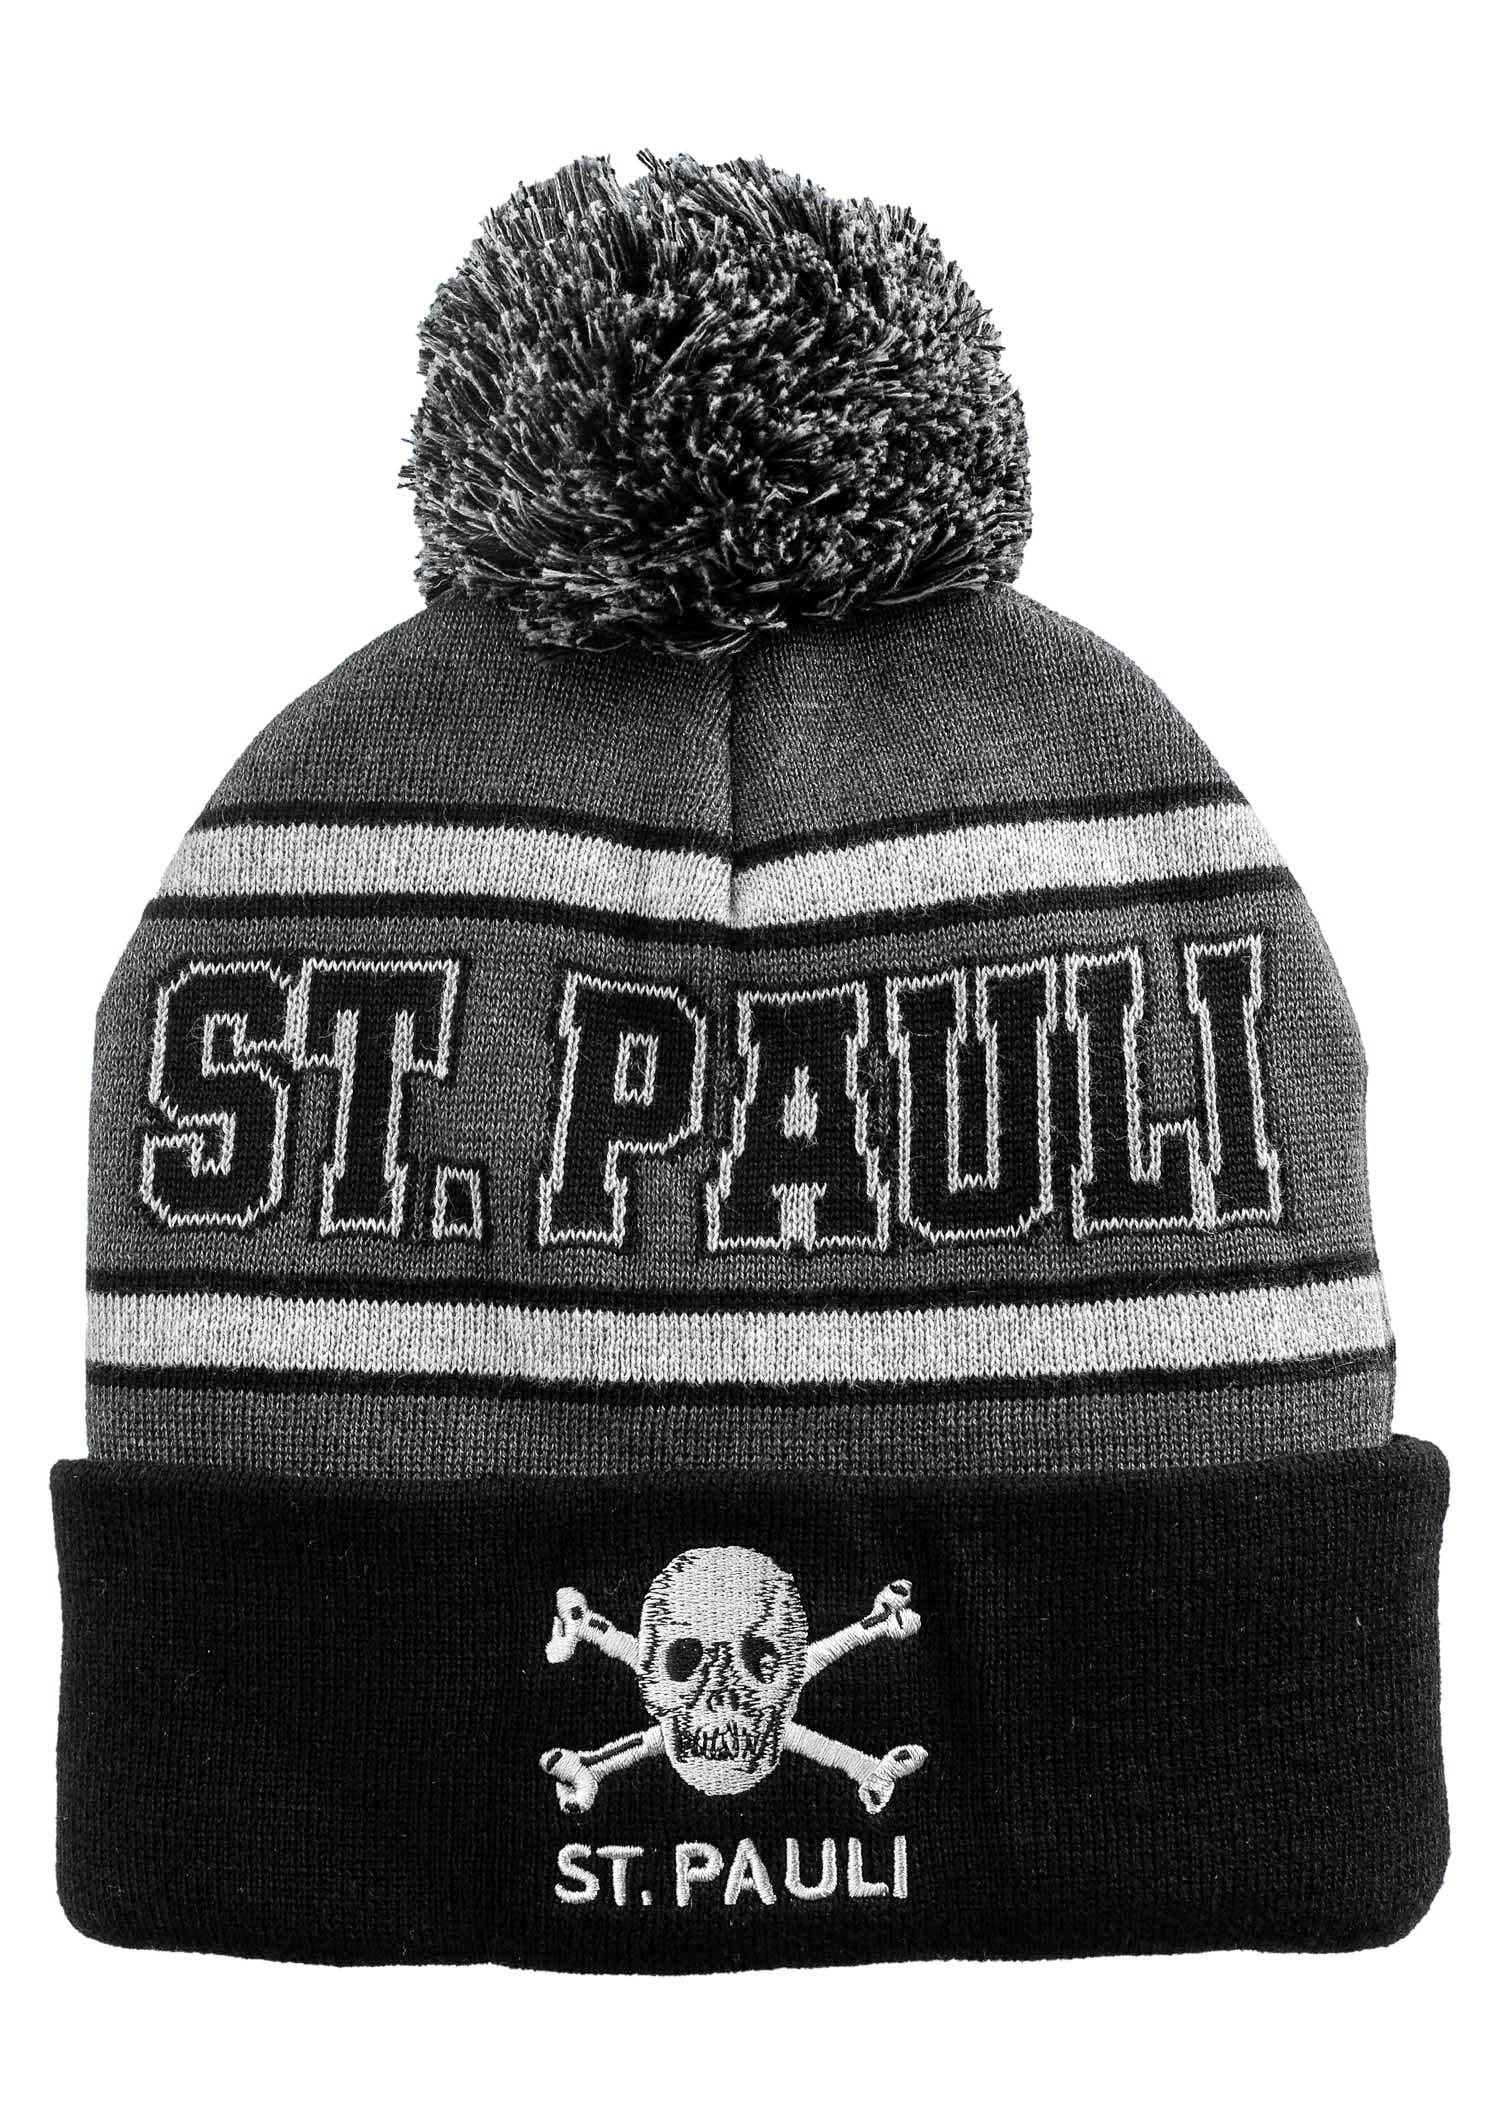 Pom-Pom Beanie "Skull St. Pauli" black - grey